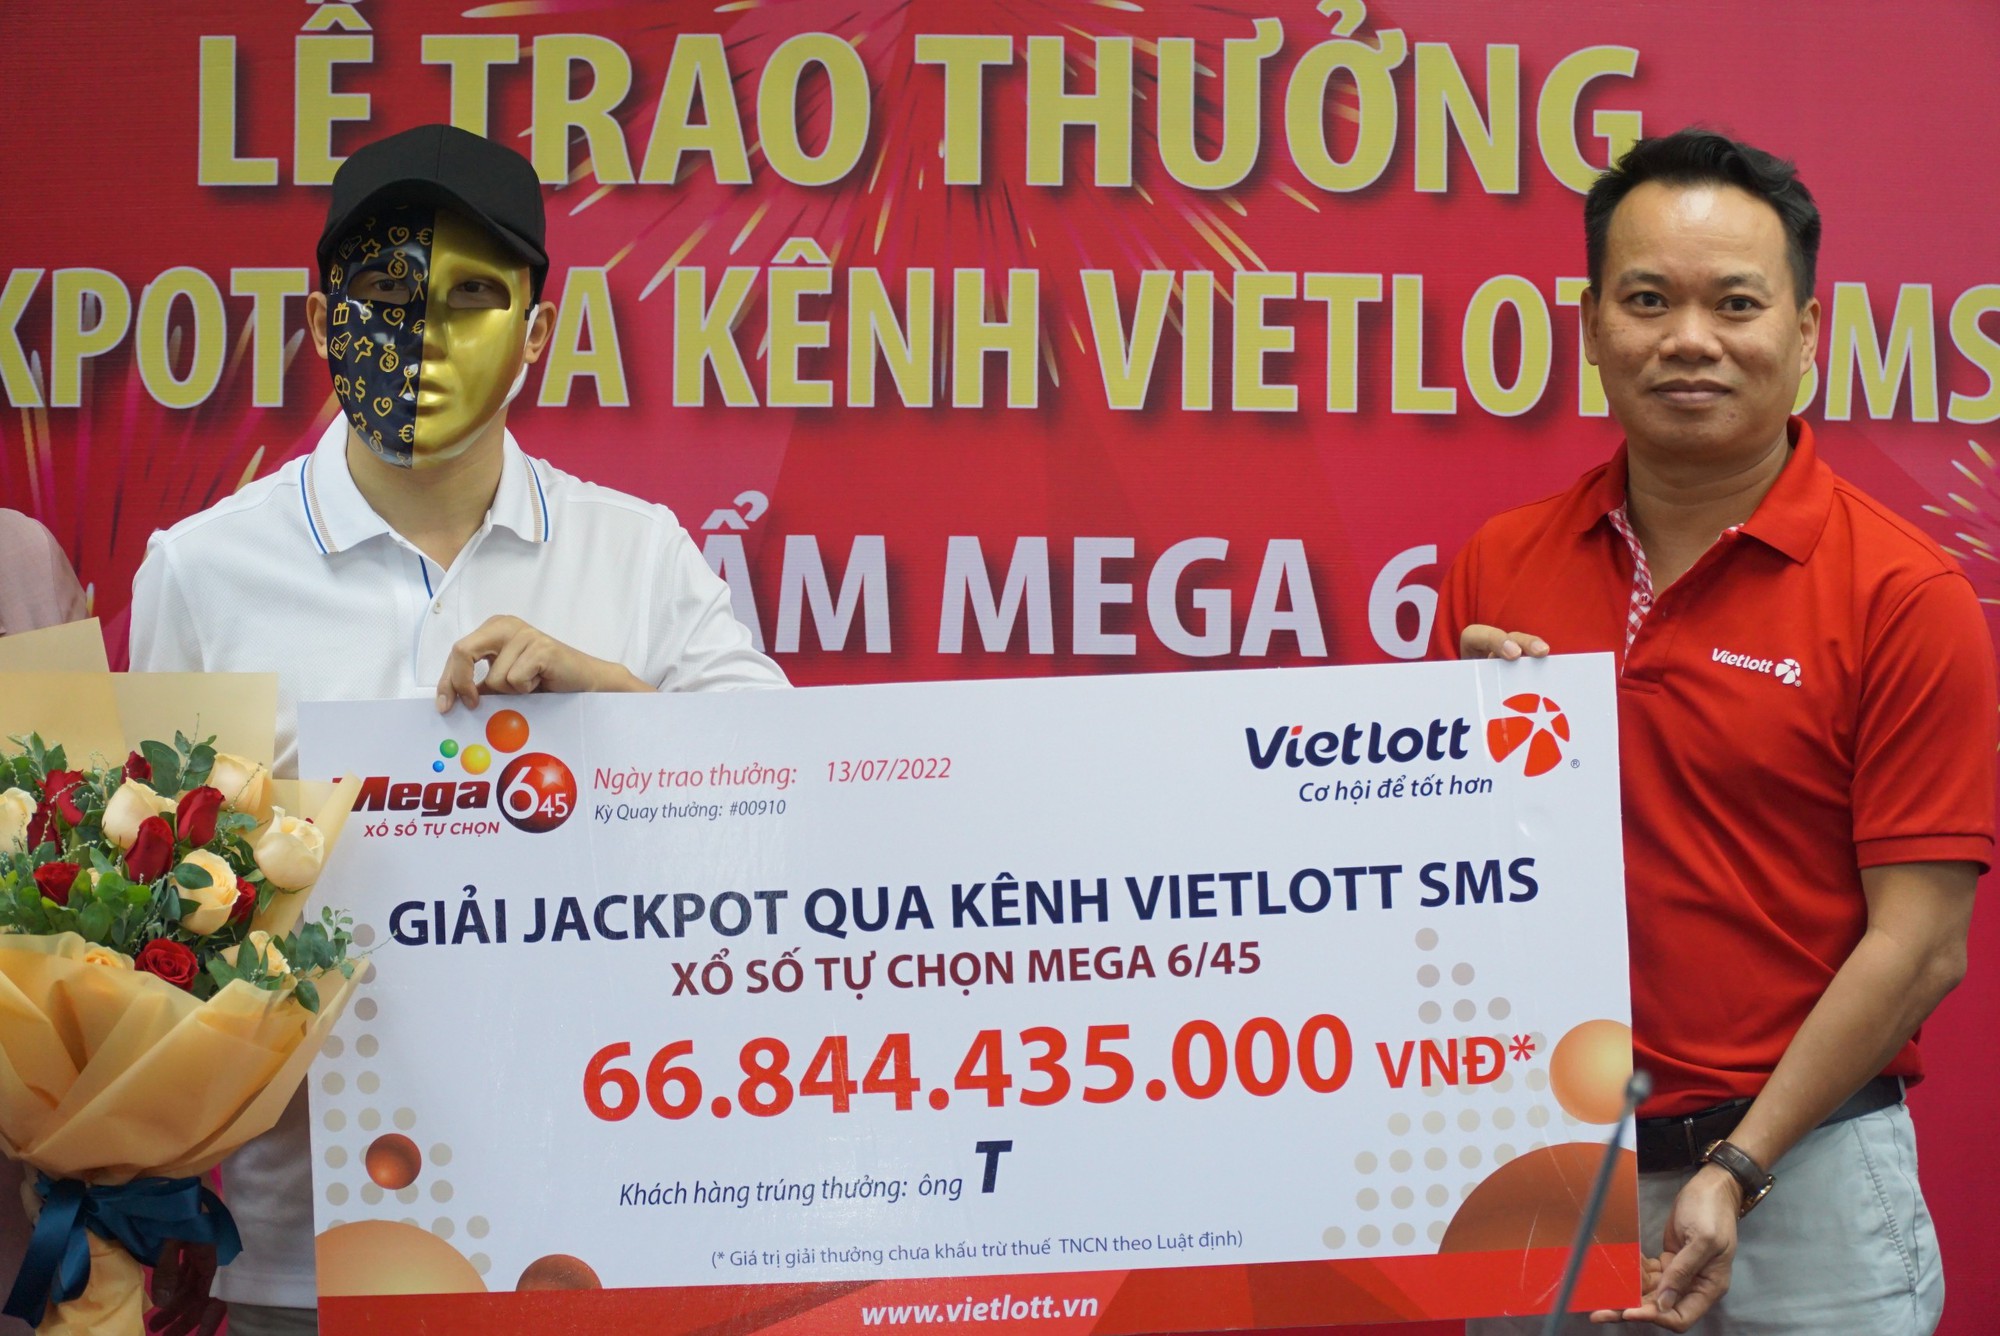 Nhân viên tỉnh Bình Định trúng giải Jackpot gần 67 tỷ đồng  - Ảnh 1.